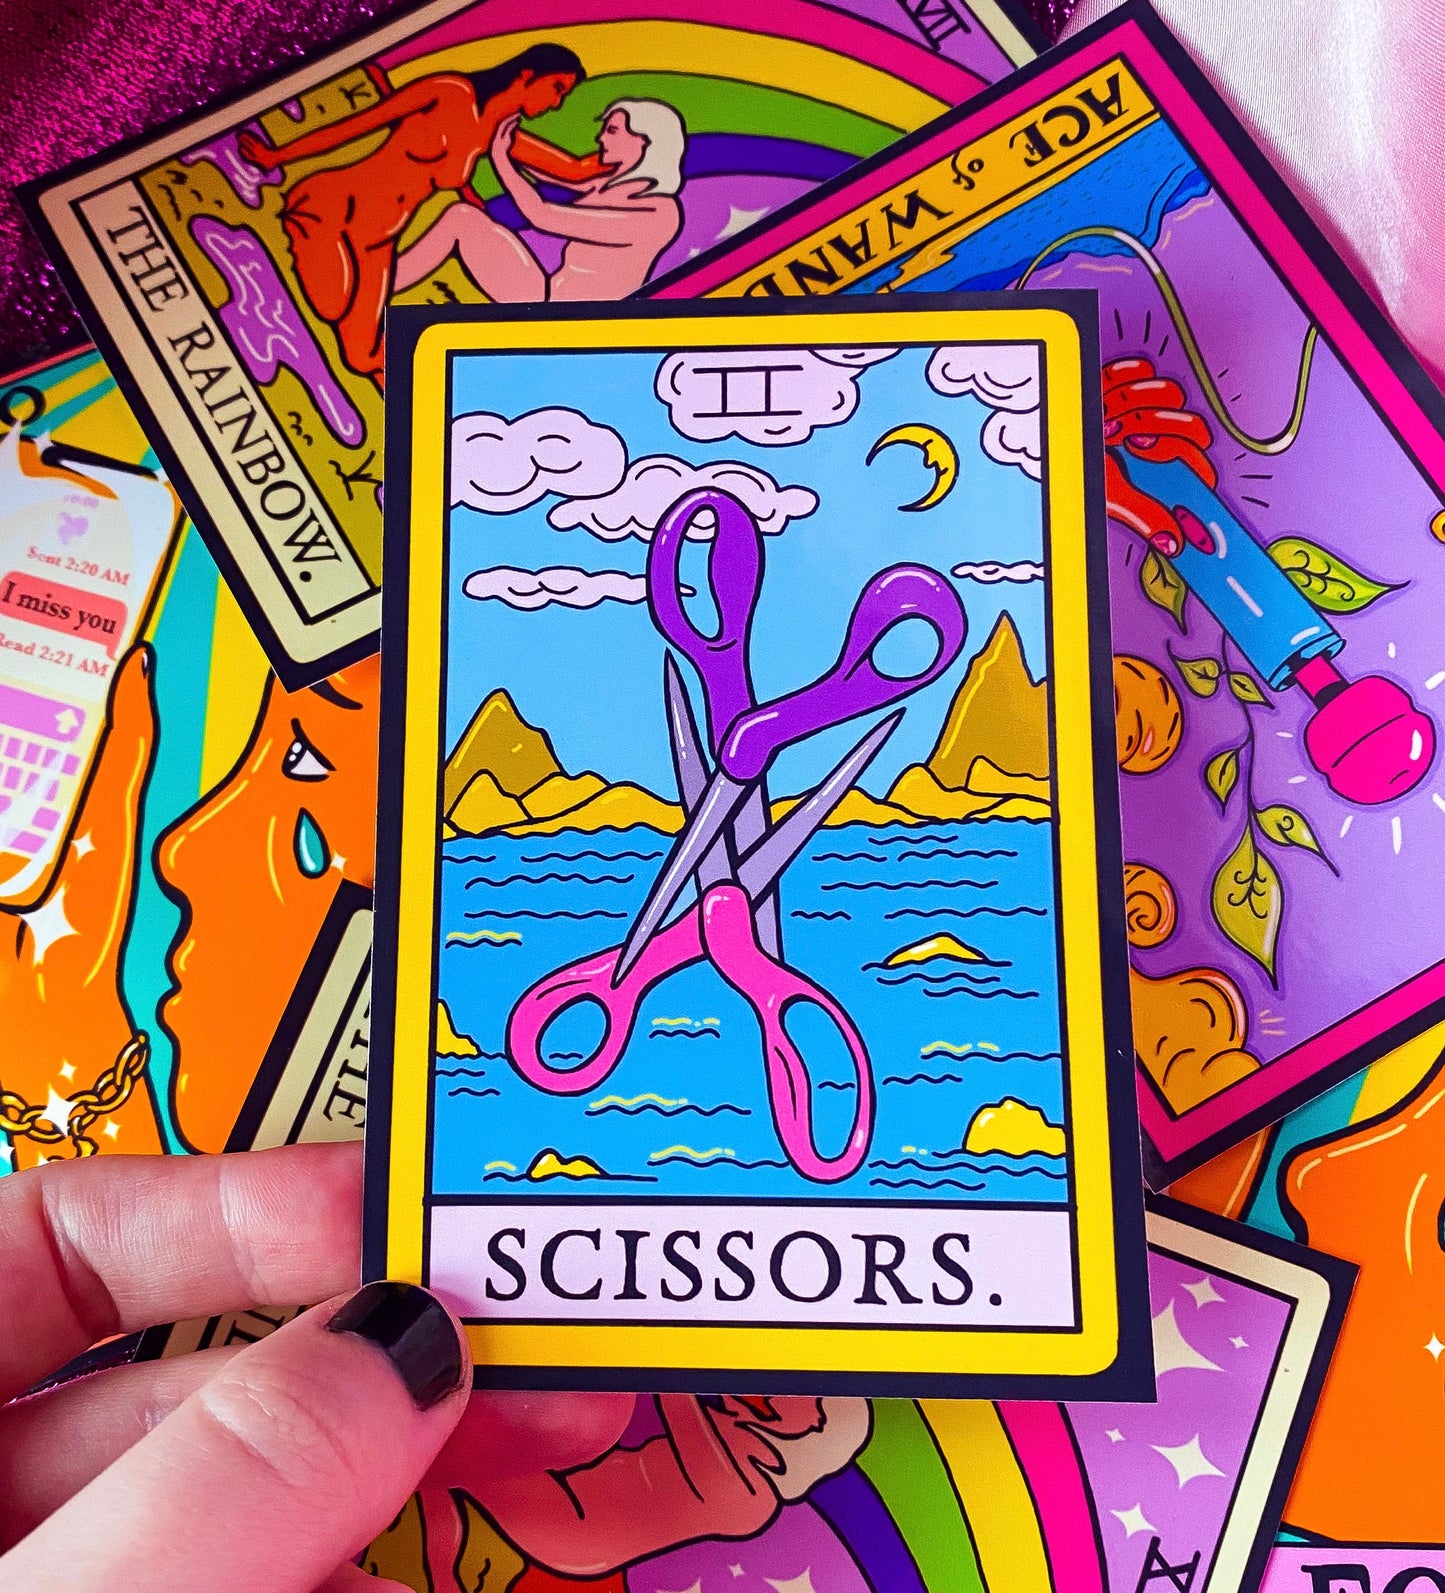 Scissors sticker, lesbian pride tarot card sticker